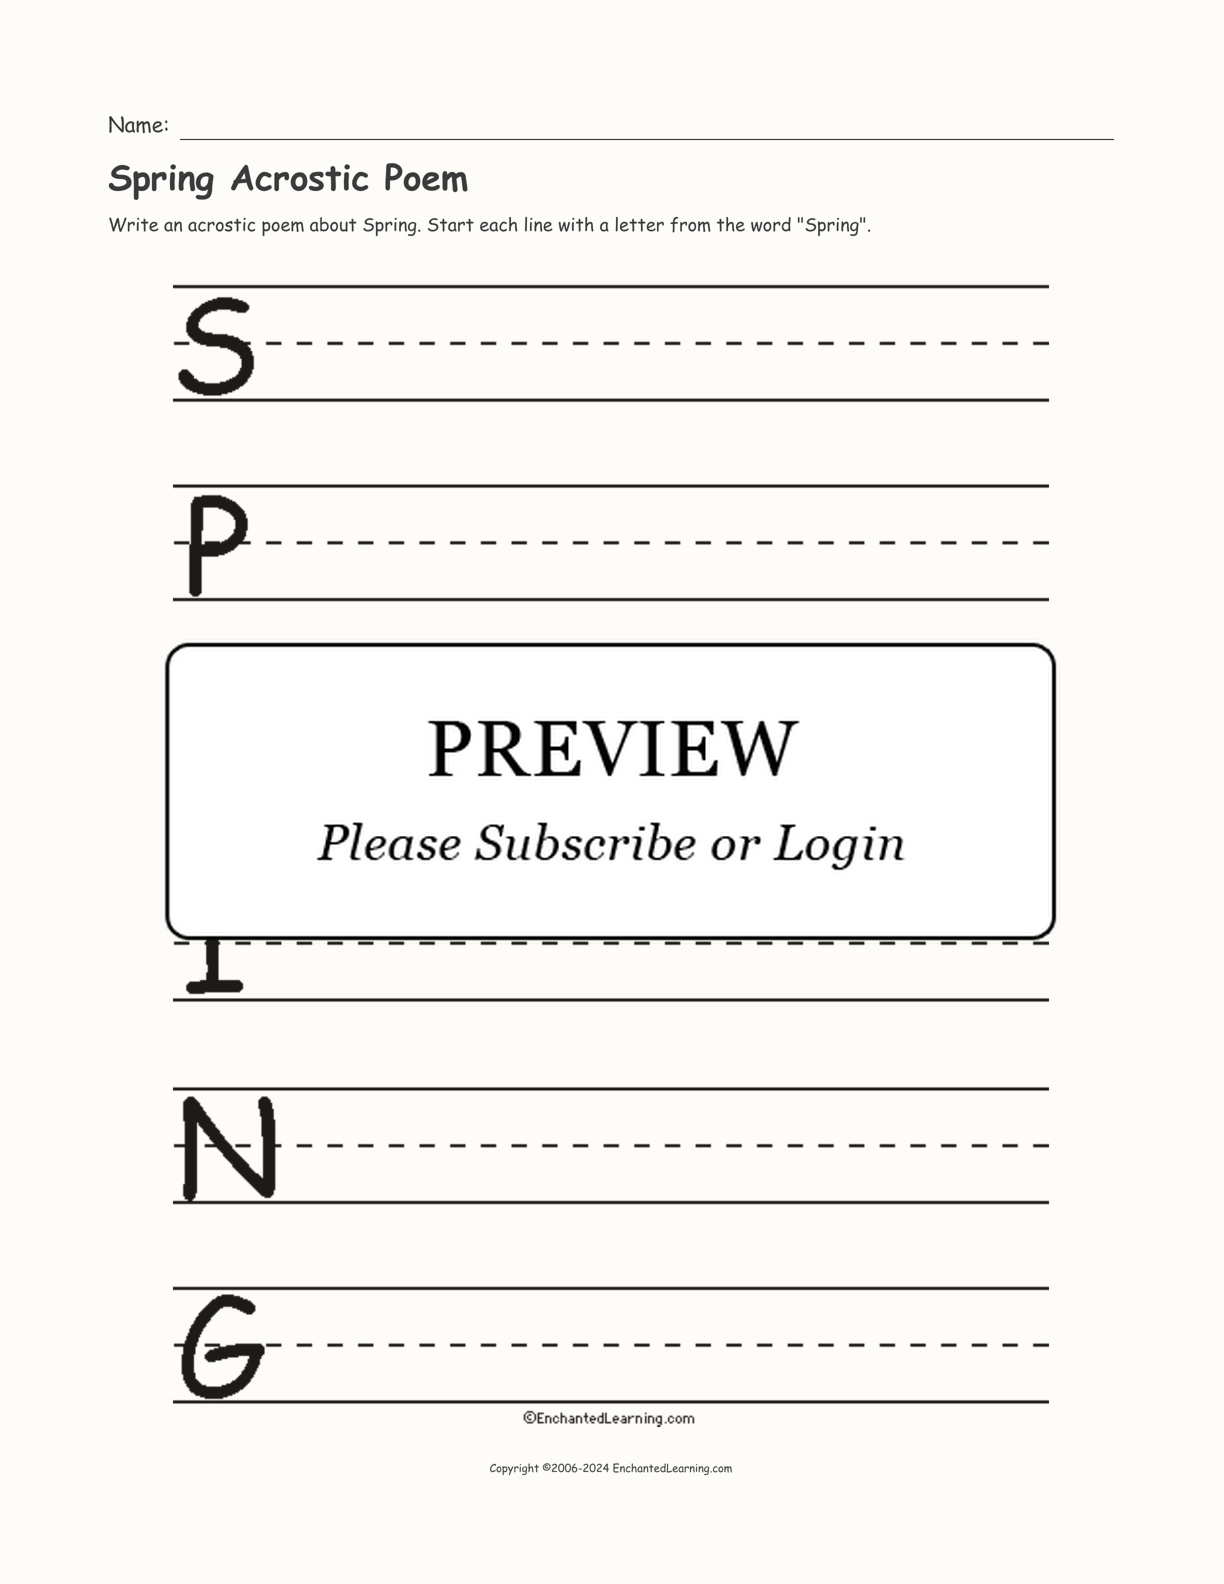 Spring Acrostic Poem interactive worksheet page 1